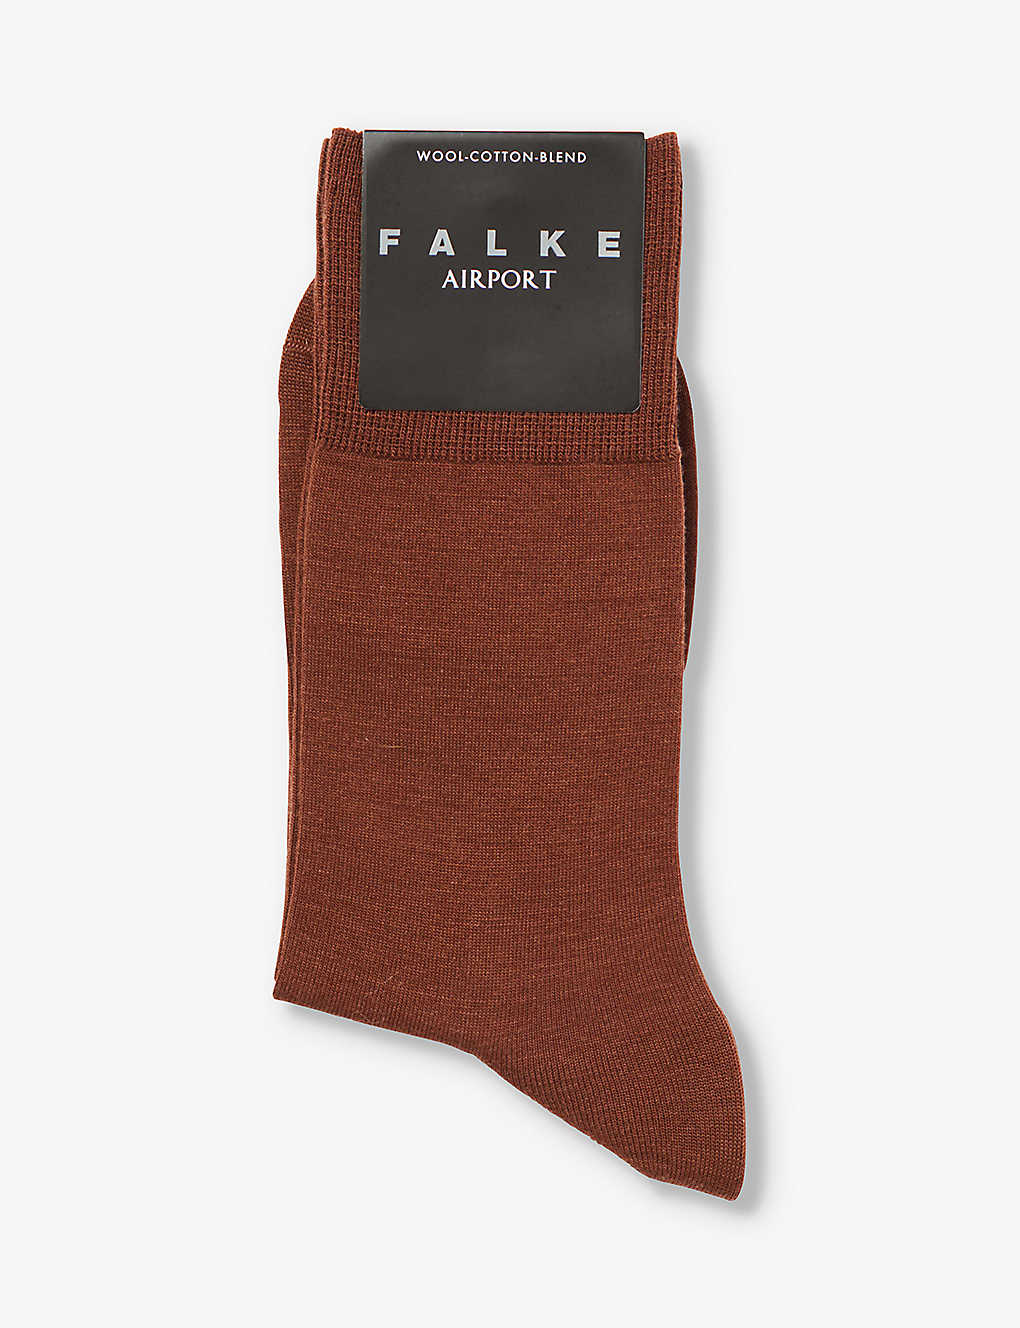 Falke Virgin Wool-blend Airport Socks In Brown